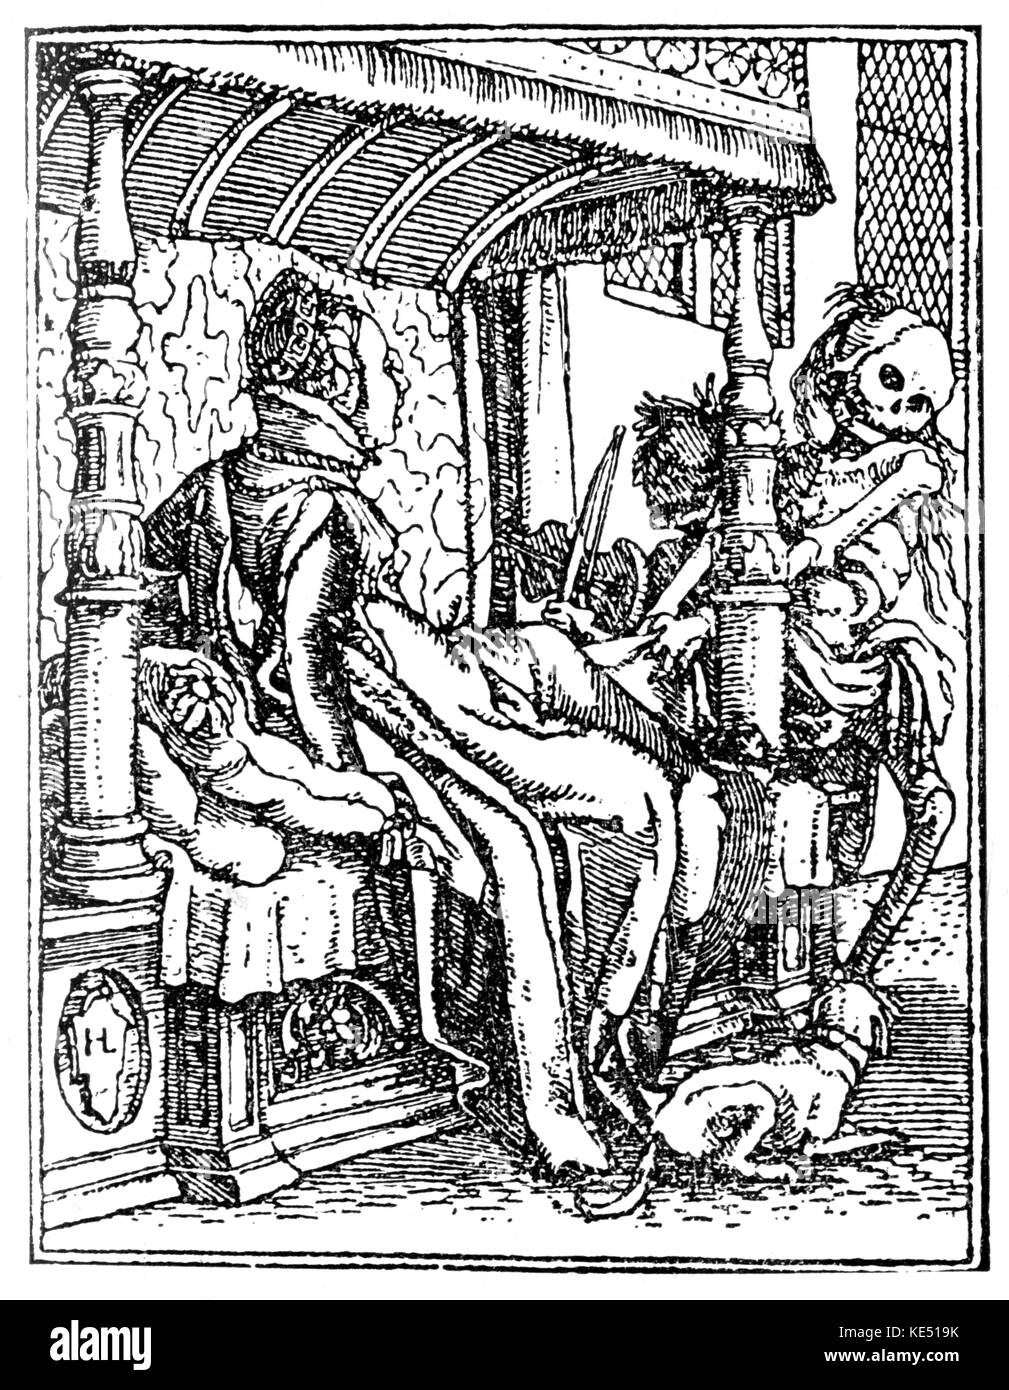 Der Totentanz (Danse Macabre ou danse de la mort) - allégorie médiévale tardive montrant la mort personnifiée. Gravure sur bois / gravure de Hans Holbein le Jeune, l'artiste allemand : ch. 1497 - 29 novembre 1543. Squelette, squelettes. Banque D'Images